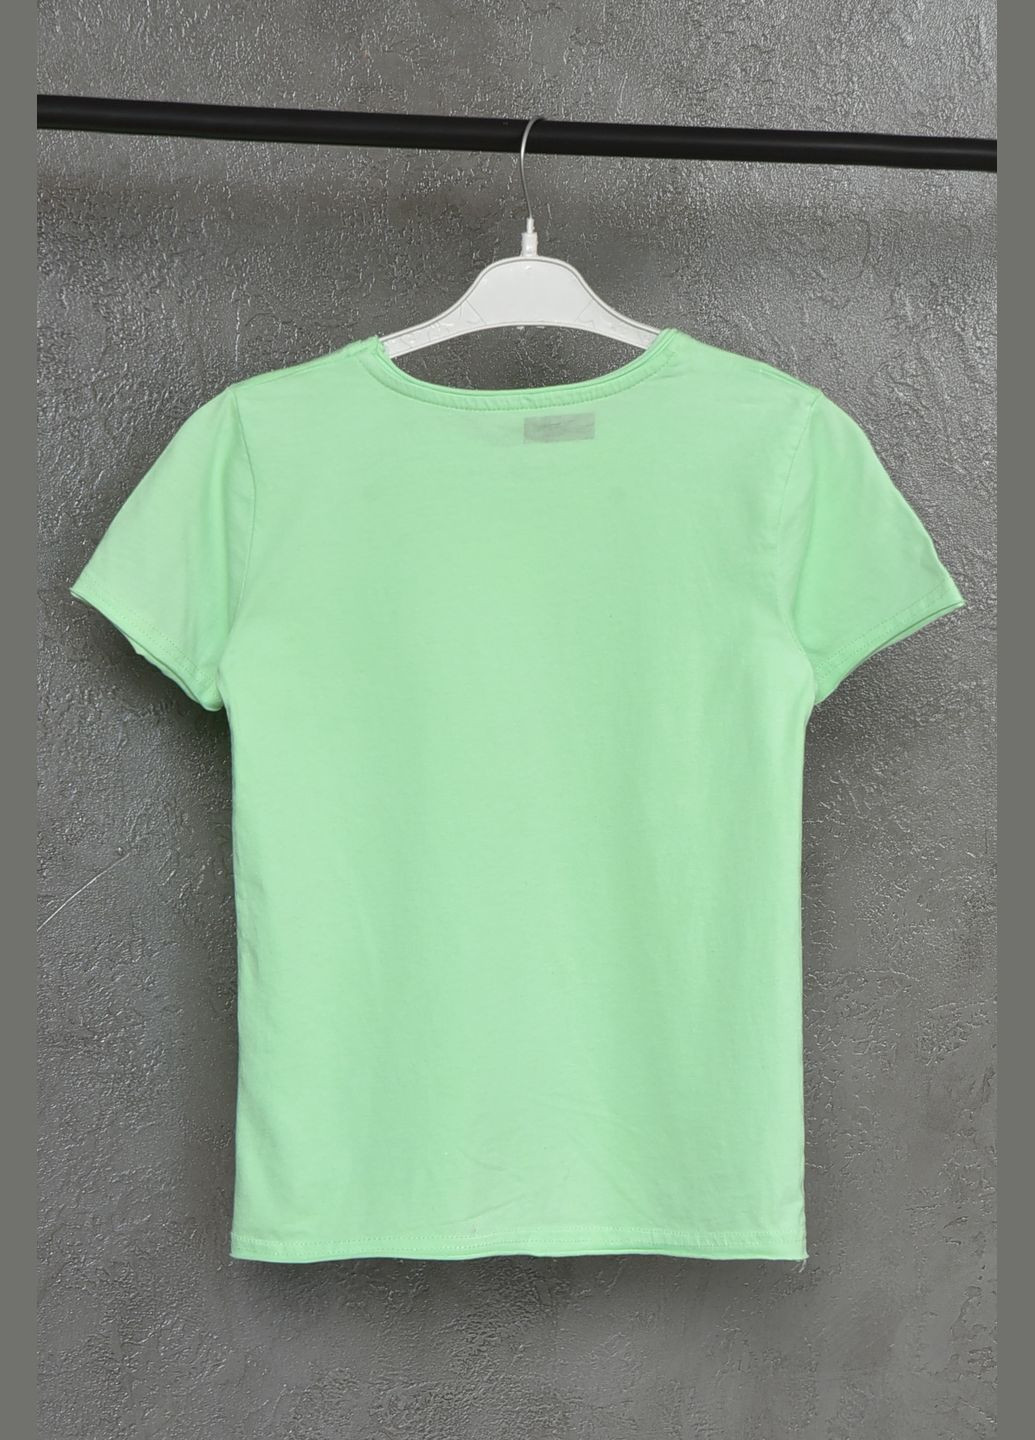 Светло-зеленая летняя футболка детская для девочки светло-зеленого цвета Let's Shop